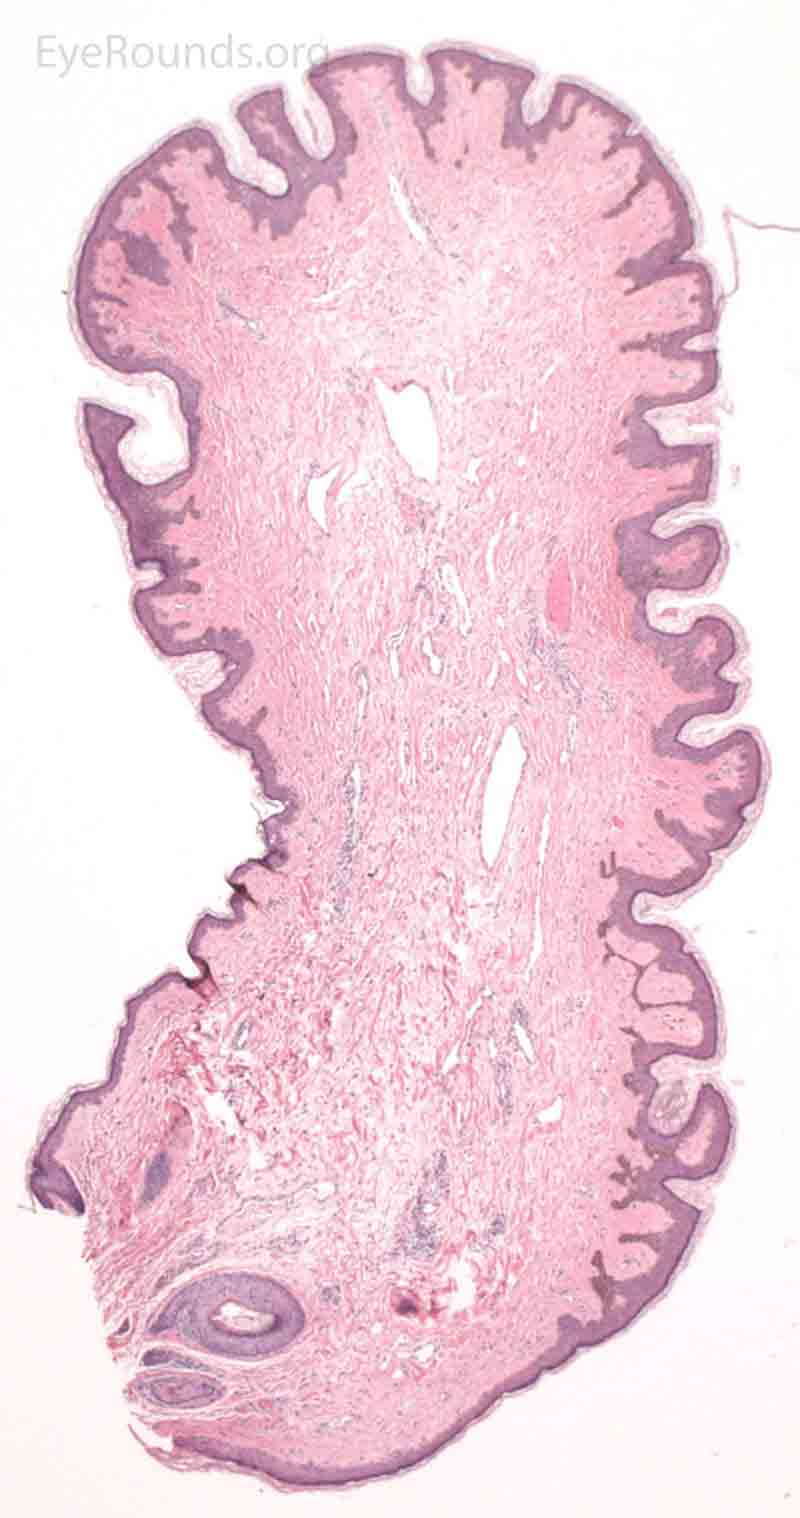 Acrochordon pathology